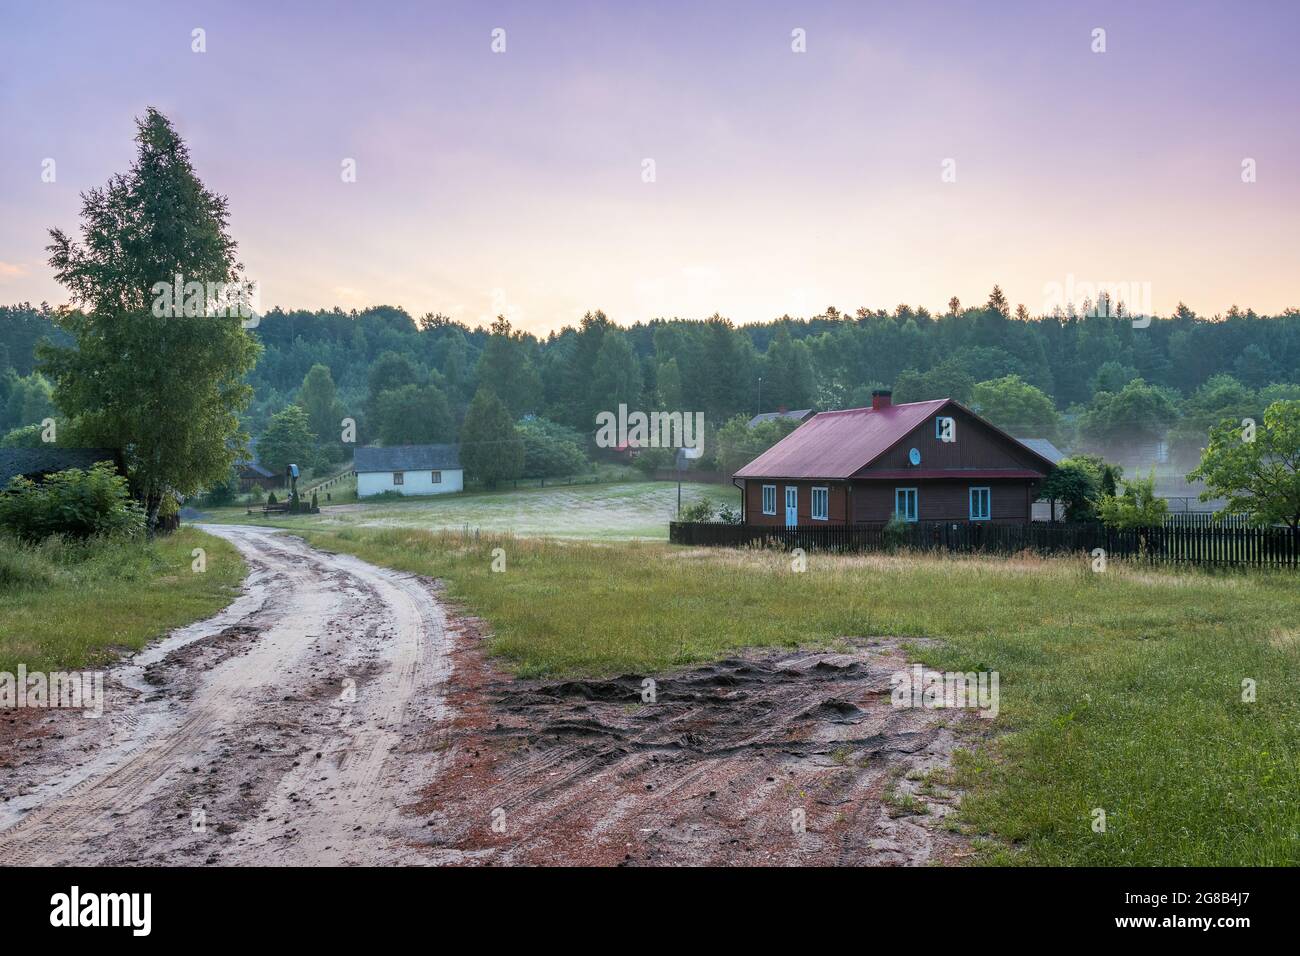 Idyllische Szene des polnischen Dorfes mitten im Wald. Morgennebel über den Feldern. Krasnobród, Roztocze, Polen. Stockfoto